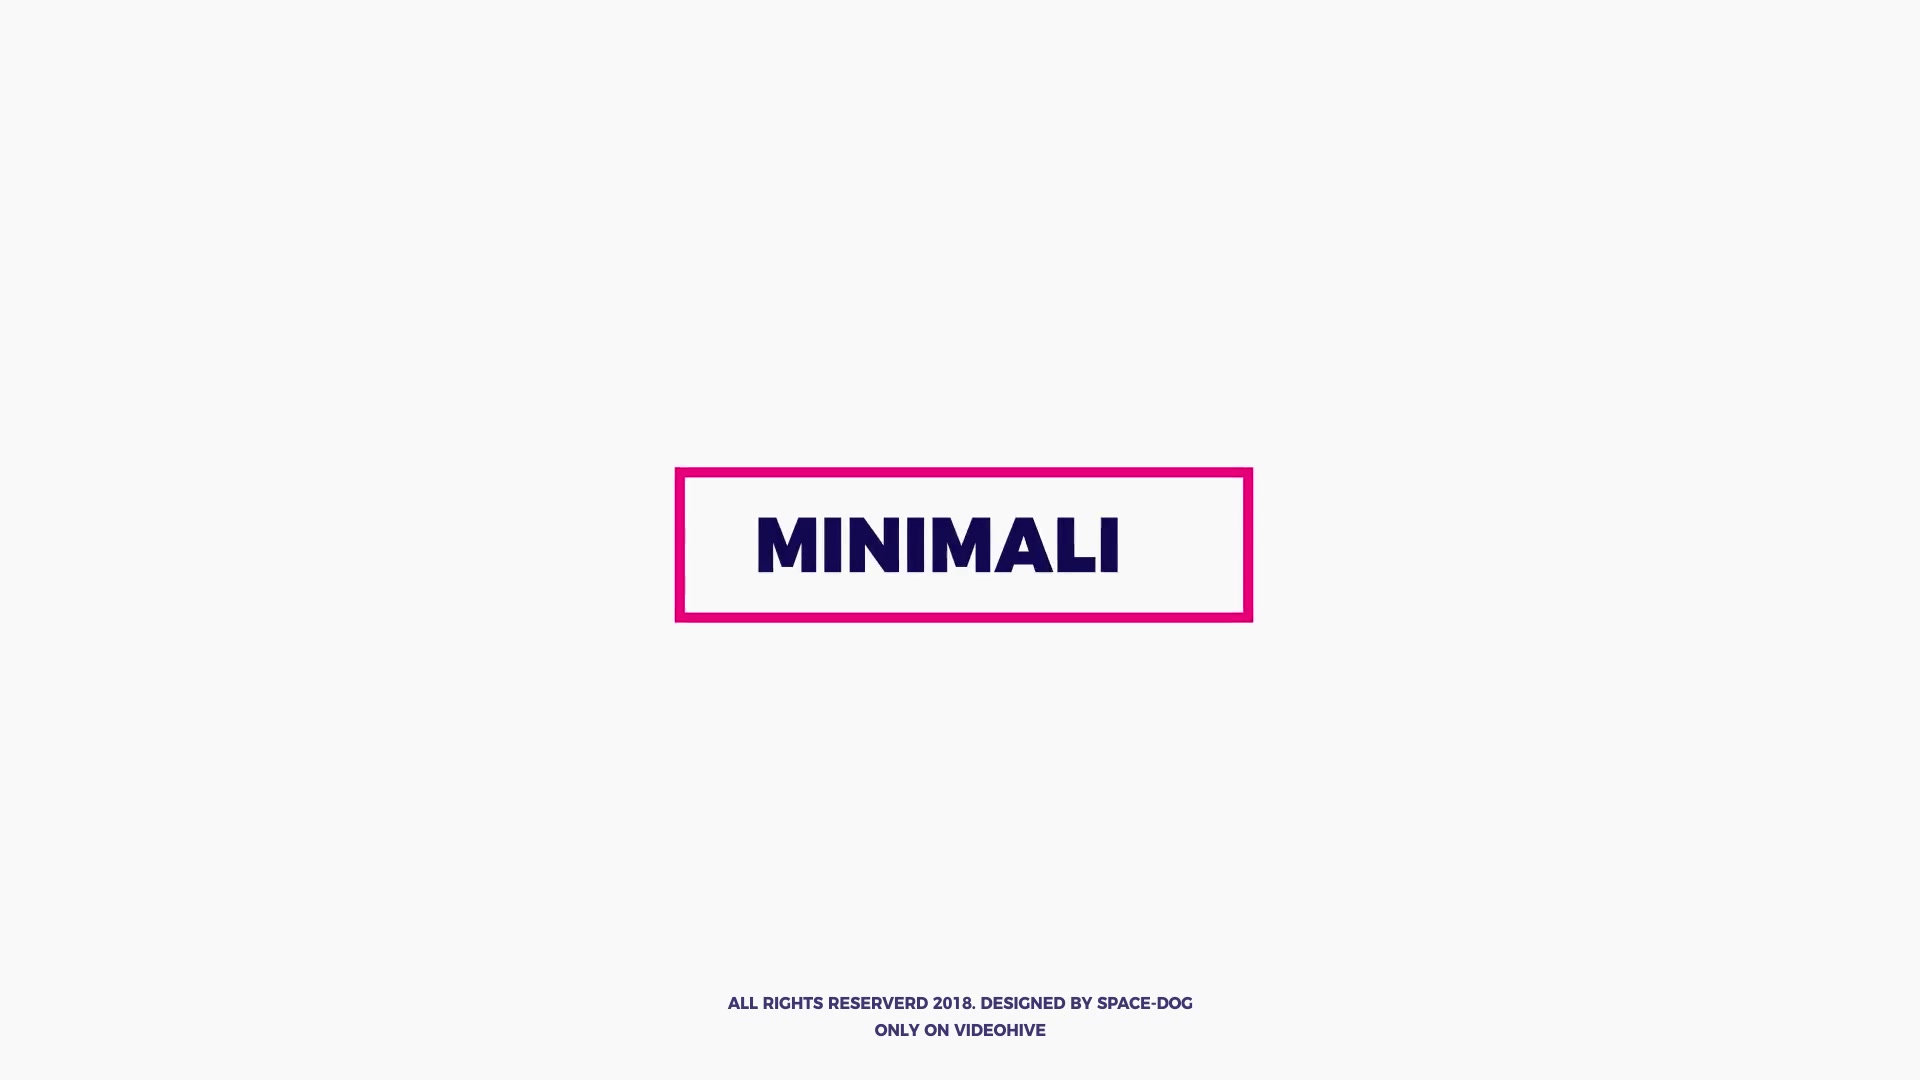 Minimal Titles - Download Videohive 21653566